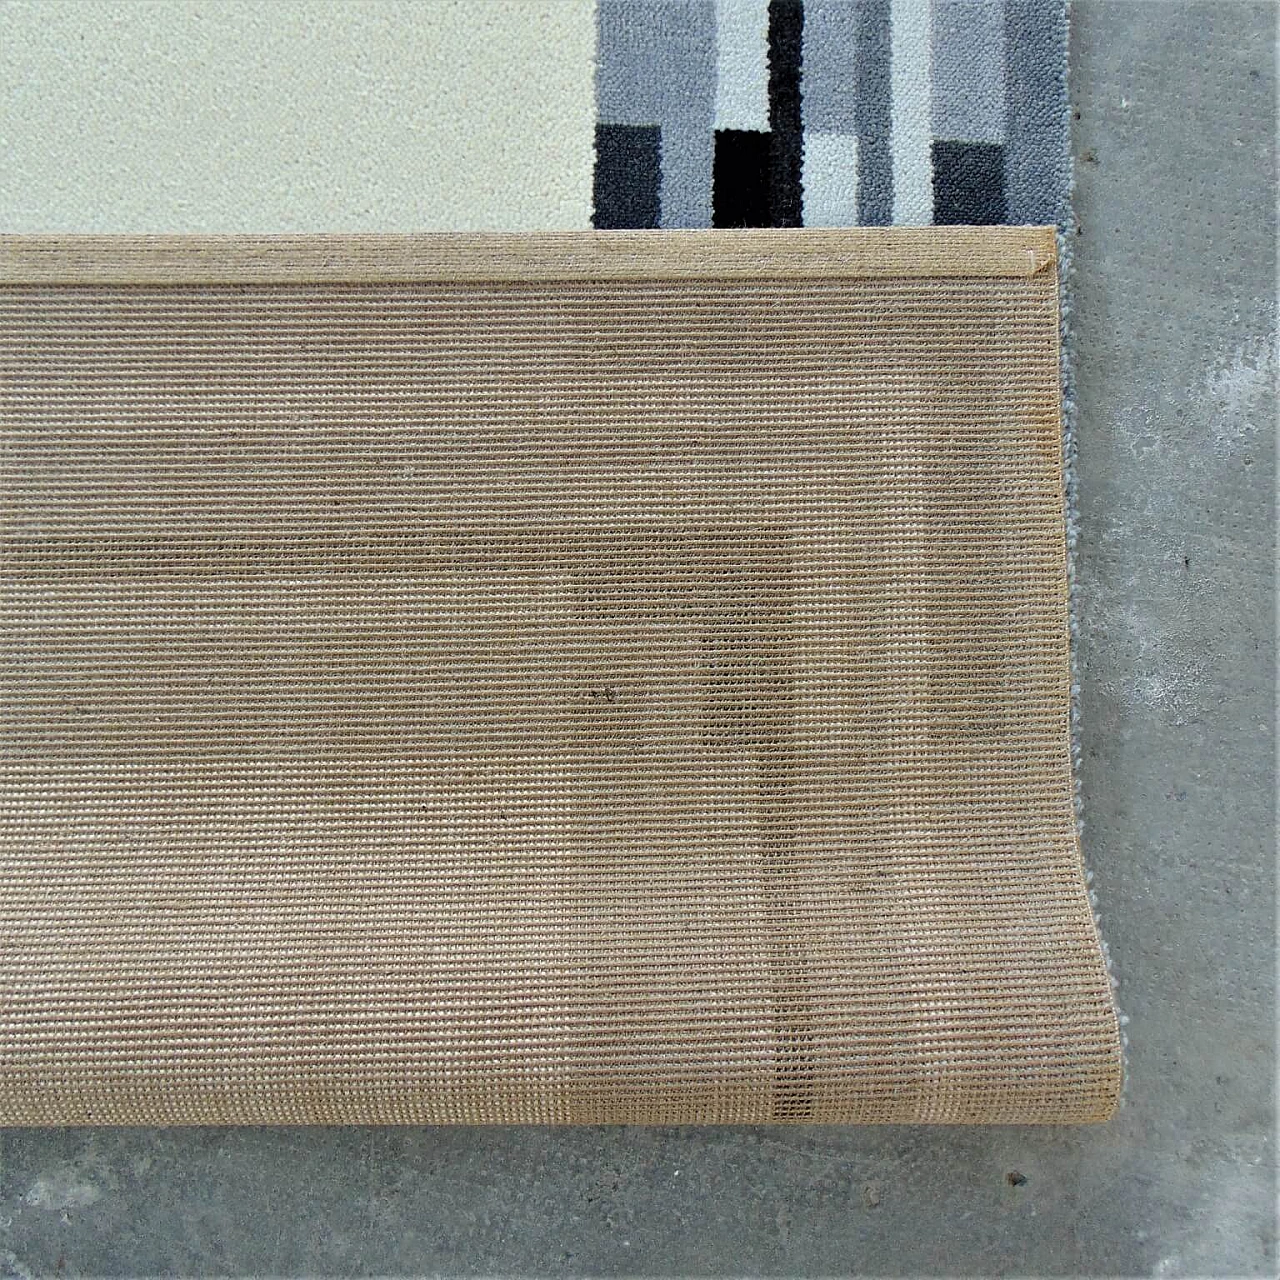 Tappeto danese EGE Rya, Axminster Rug, in pura lana, color crema con bordo scuro, anni '80 1069308